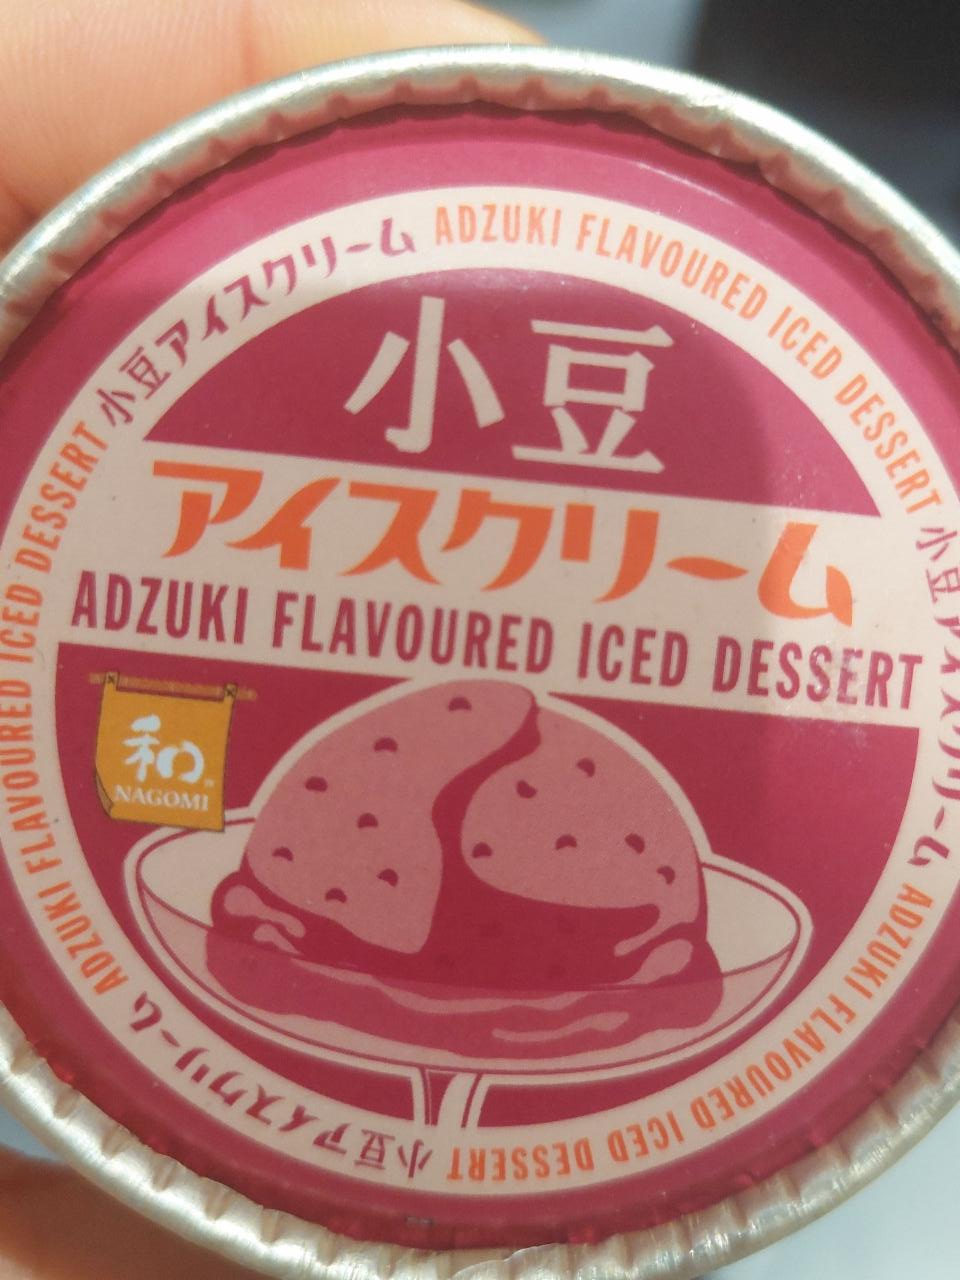 Fotografie - adzuki flavoured iced cream dessert